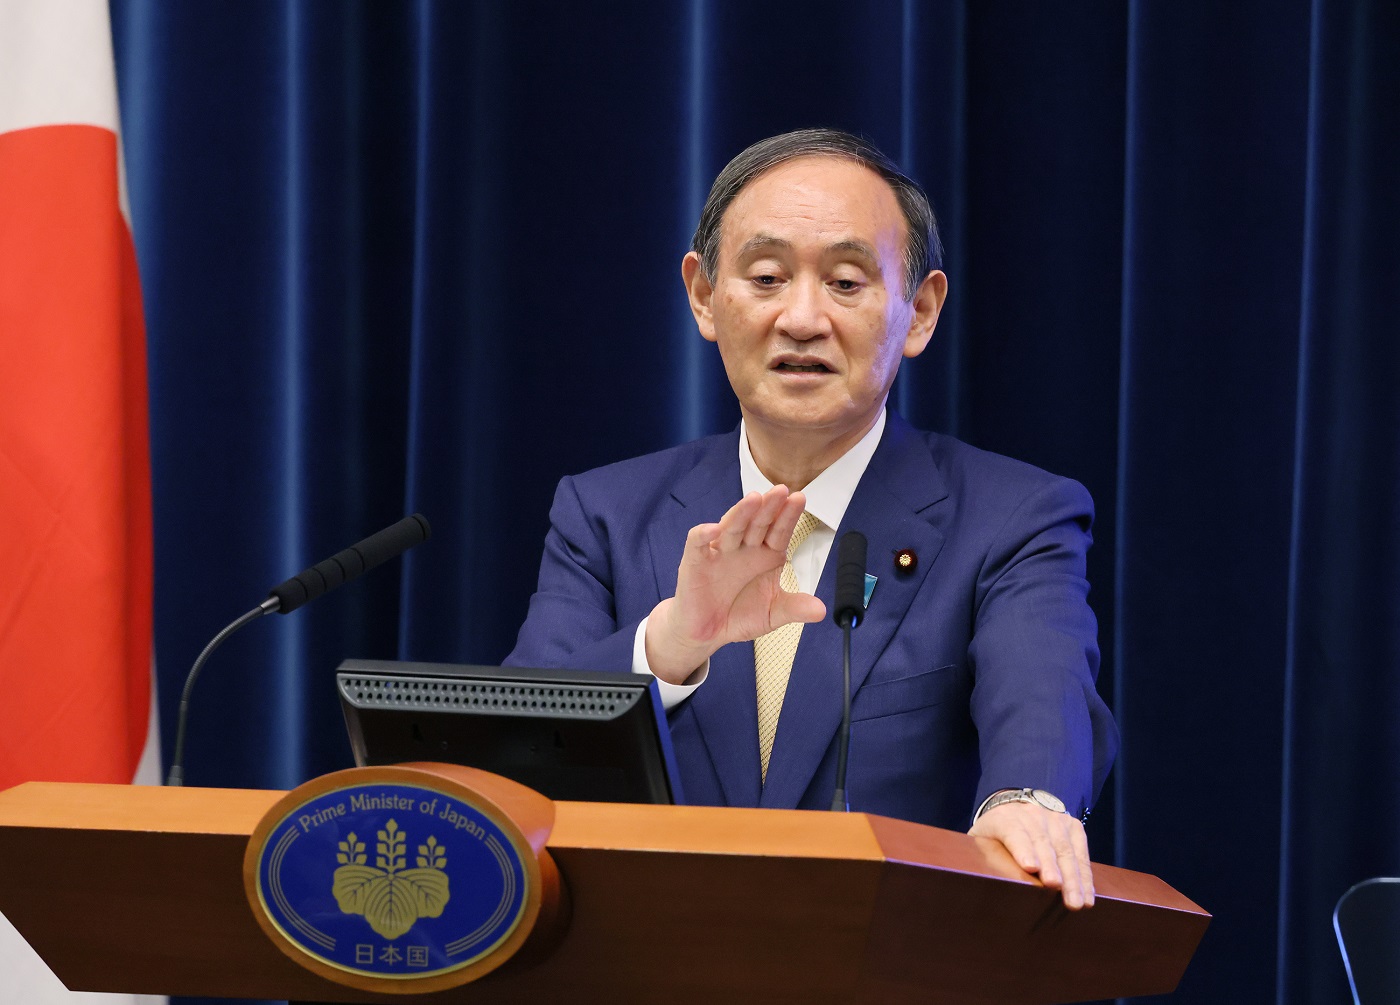 菅内阁总理大臣关于新型冠状病毒感染症的记者招待会